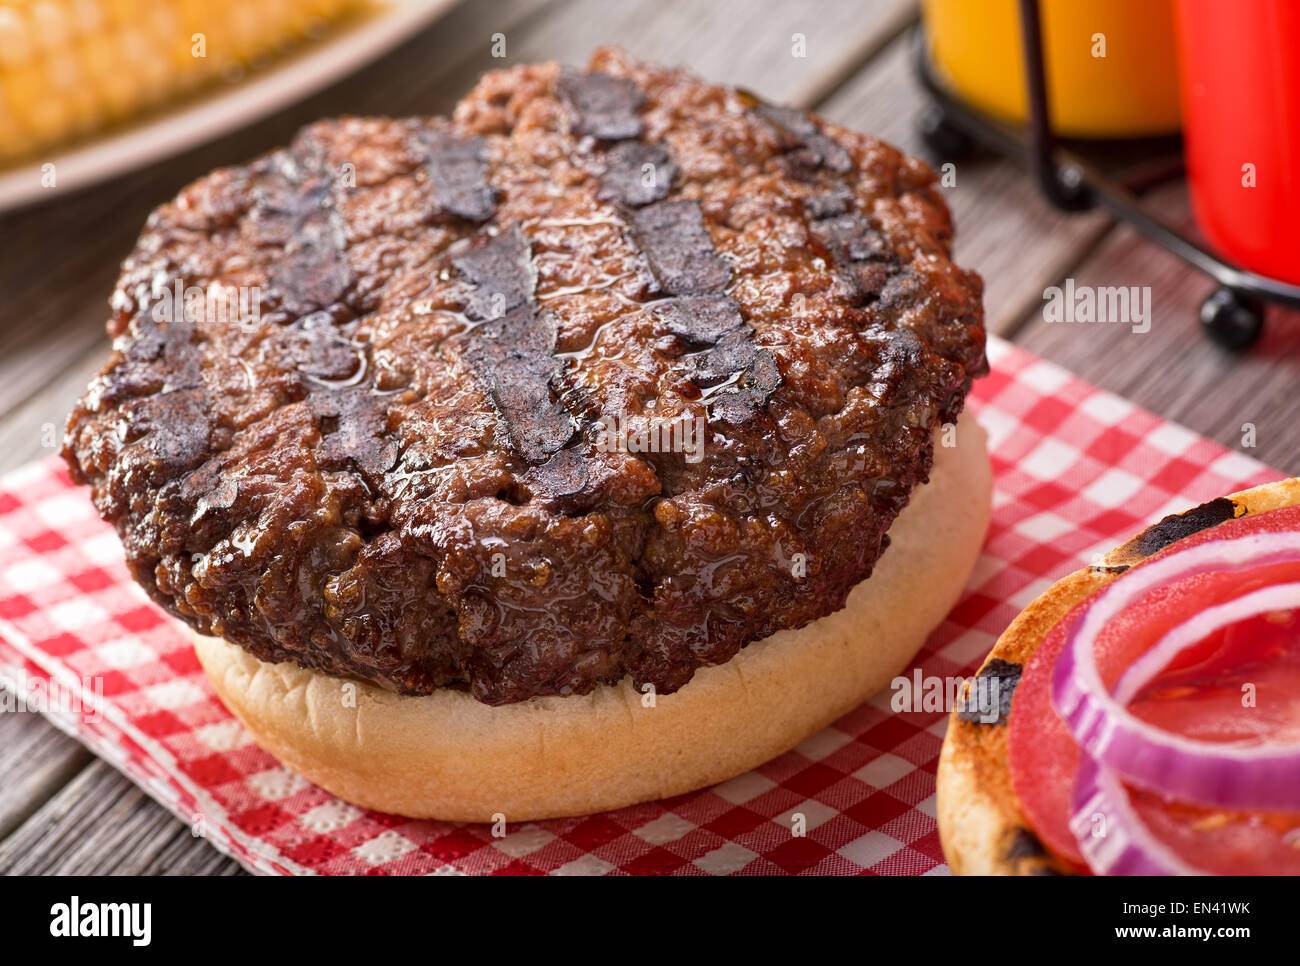 Un barbecue avec grill hamburger juteux de marques sur une table de pique-nique rustique à la tomate, oignon, moutarde, ketchup, et le maïs. Banque D'Images